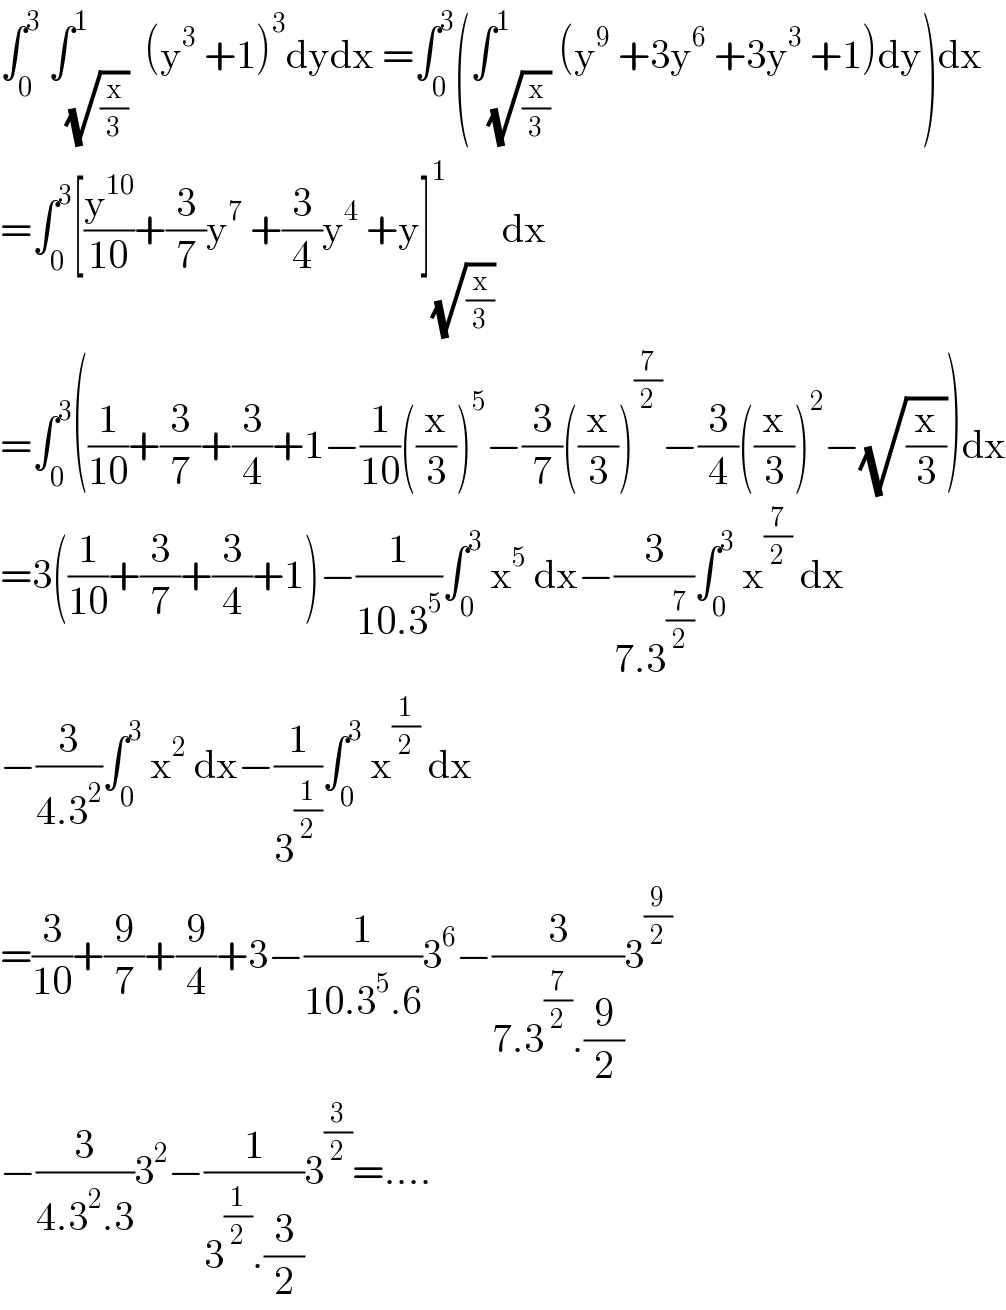 ∫_0 ^3  ∫_(√(x/3)) ^1  (y^3  +1)^3 dydx =∫_0 ^3 (∫_(√(x/3)) ^1 (y^9  +3y^6  +3y^3  +1)dy)dx  =∫_0 ^3 [(y^(10) /(10))+(3/7)y^7  +(3/4)y^4  +y]_(√(x/3)) ^1  dx  =∫_0 ^3 ((1/(10))+(3/7)+(3/4)+1−(1/(10))((x/3))^5 −(3/7)((x/3))^(7/2) −(3/4)((x/3))^2 −(√(x/3)))dx  =3((1/(10))+(3/7)+(3/4)+1)−(1/(10.3^5 ))∫_0 ^3  x^5  dx−(3/(7.3^(7/2) ))∫_0 ^3  x^(7/2)  dx  −(3/(4.3^2 ))∫_0 ^3  x^2  dx−(1/3^(1/2) )∫_0 ^3  x^(1/2)  dx  =(3/(10))+(9/7)+(9/4)+3−(1/(10.3^5 .6))3^6 −(3/(7.3^(7/2) .(9/2)))3^(9/2)   −(3/(4.3^2 .3))3^2 −(1/(3^(1/2) .(3/2)))3^(3/2) =....  